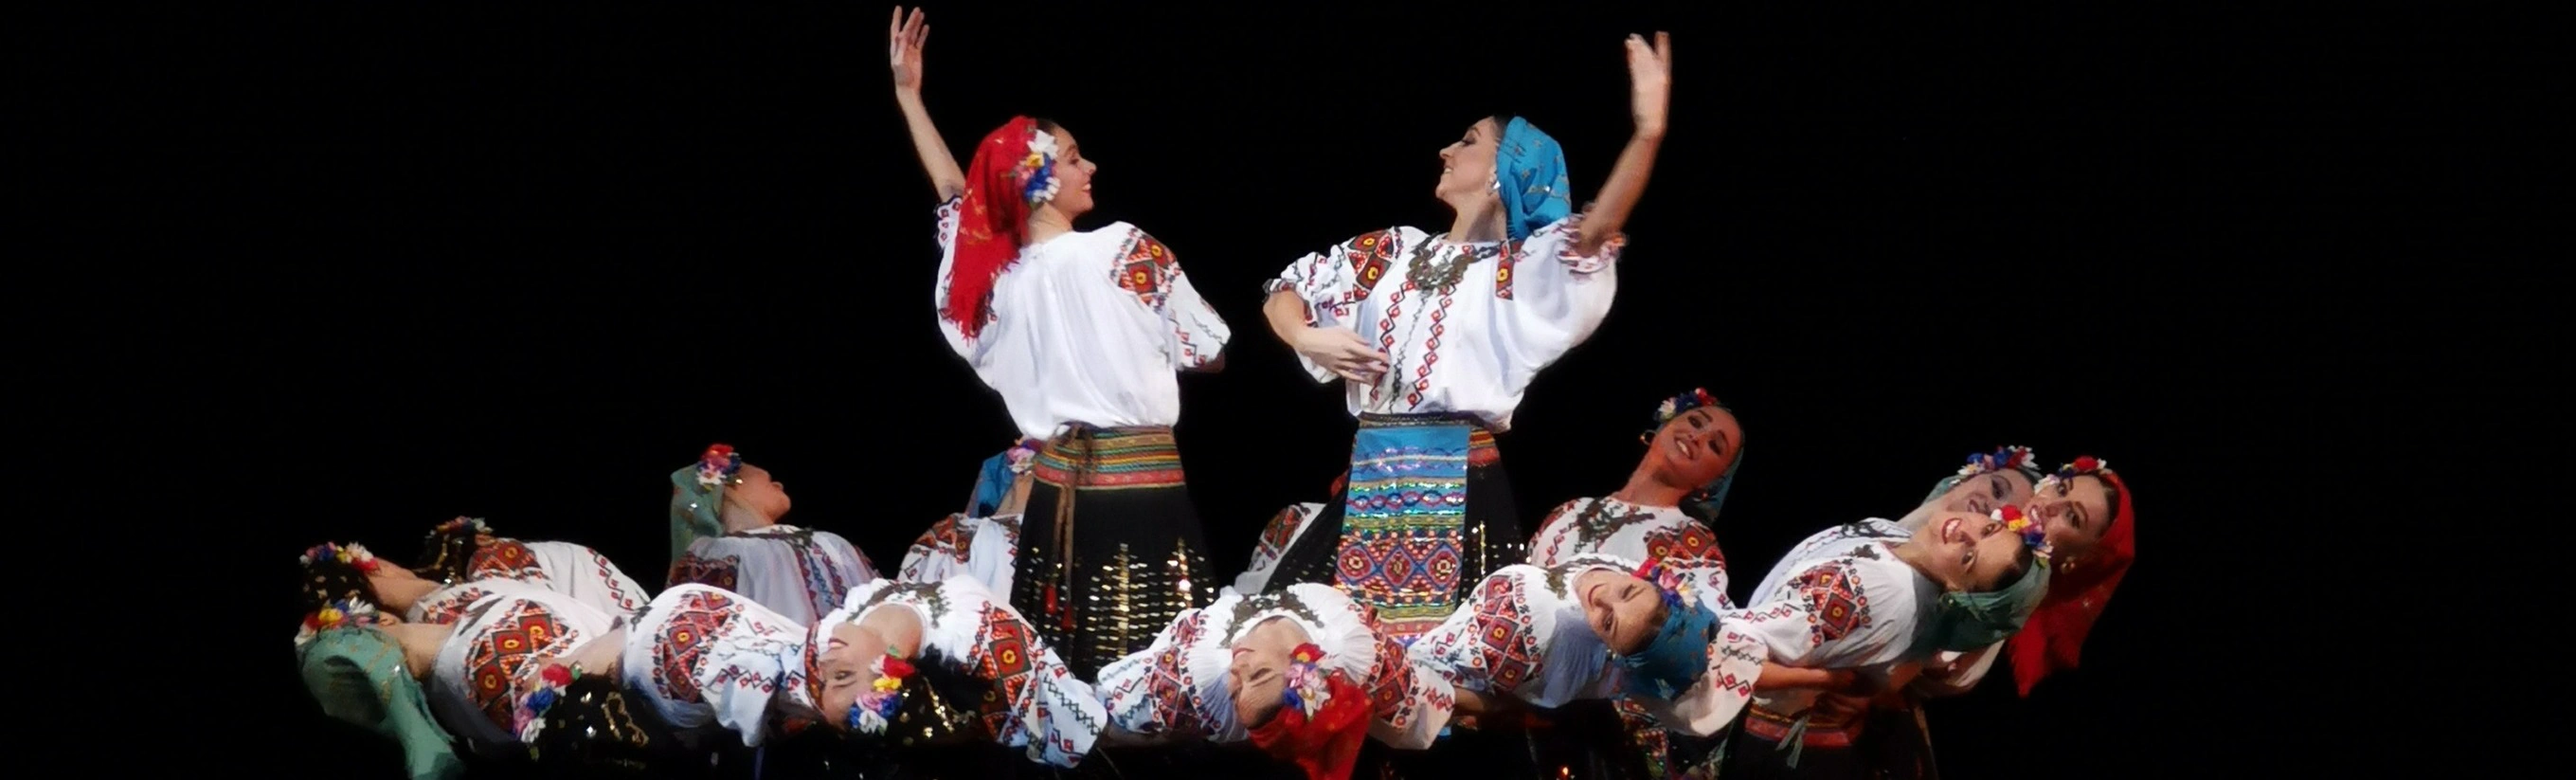 Шоу-программа виртуозного ансамбля Игоря Моисеева: погрузитесь в мир танцев разных народов!